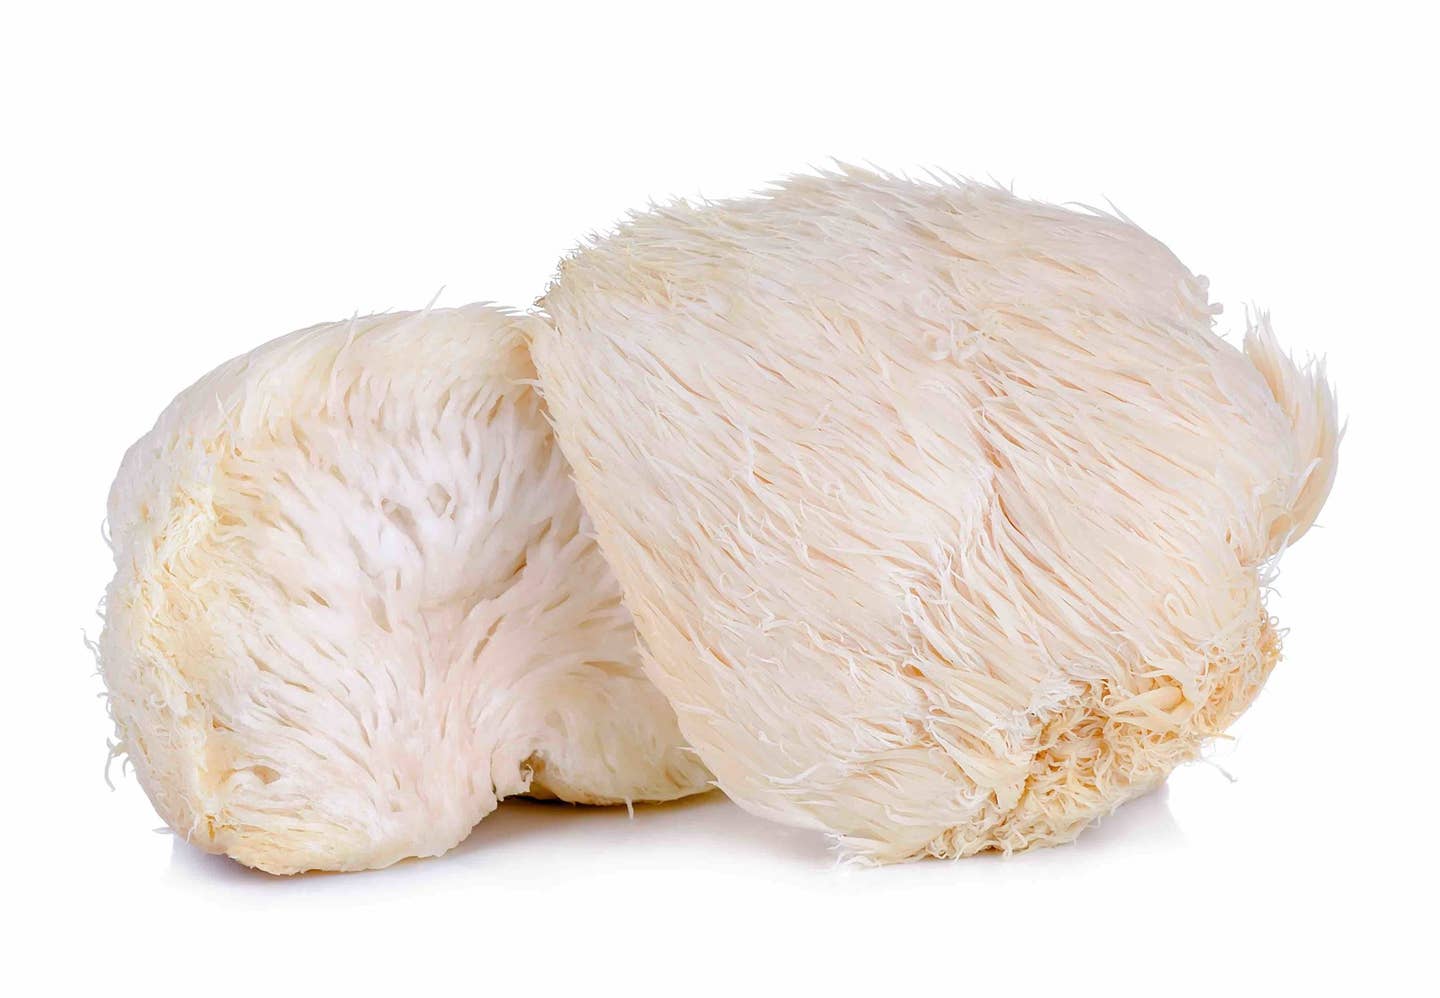 lion's mane mushroom isolated on white background.